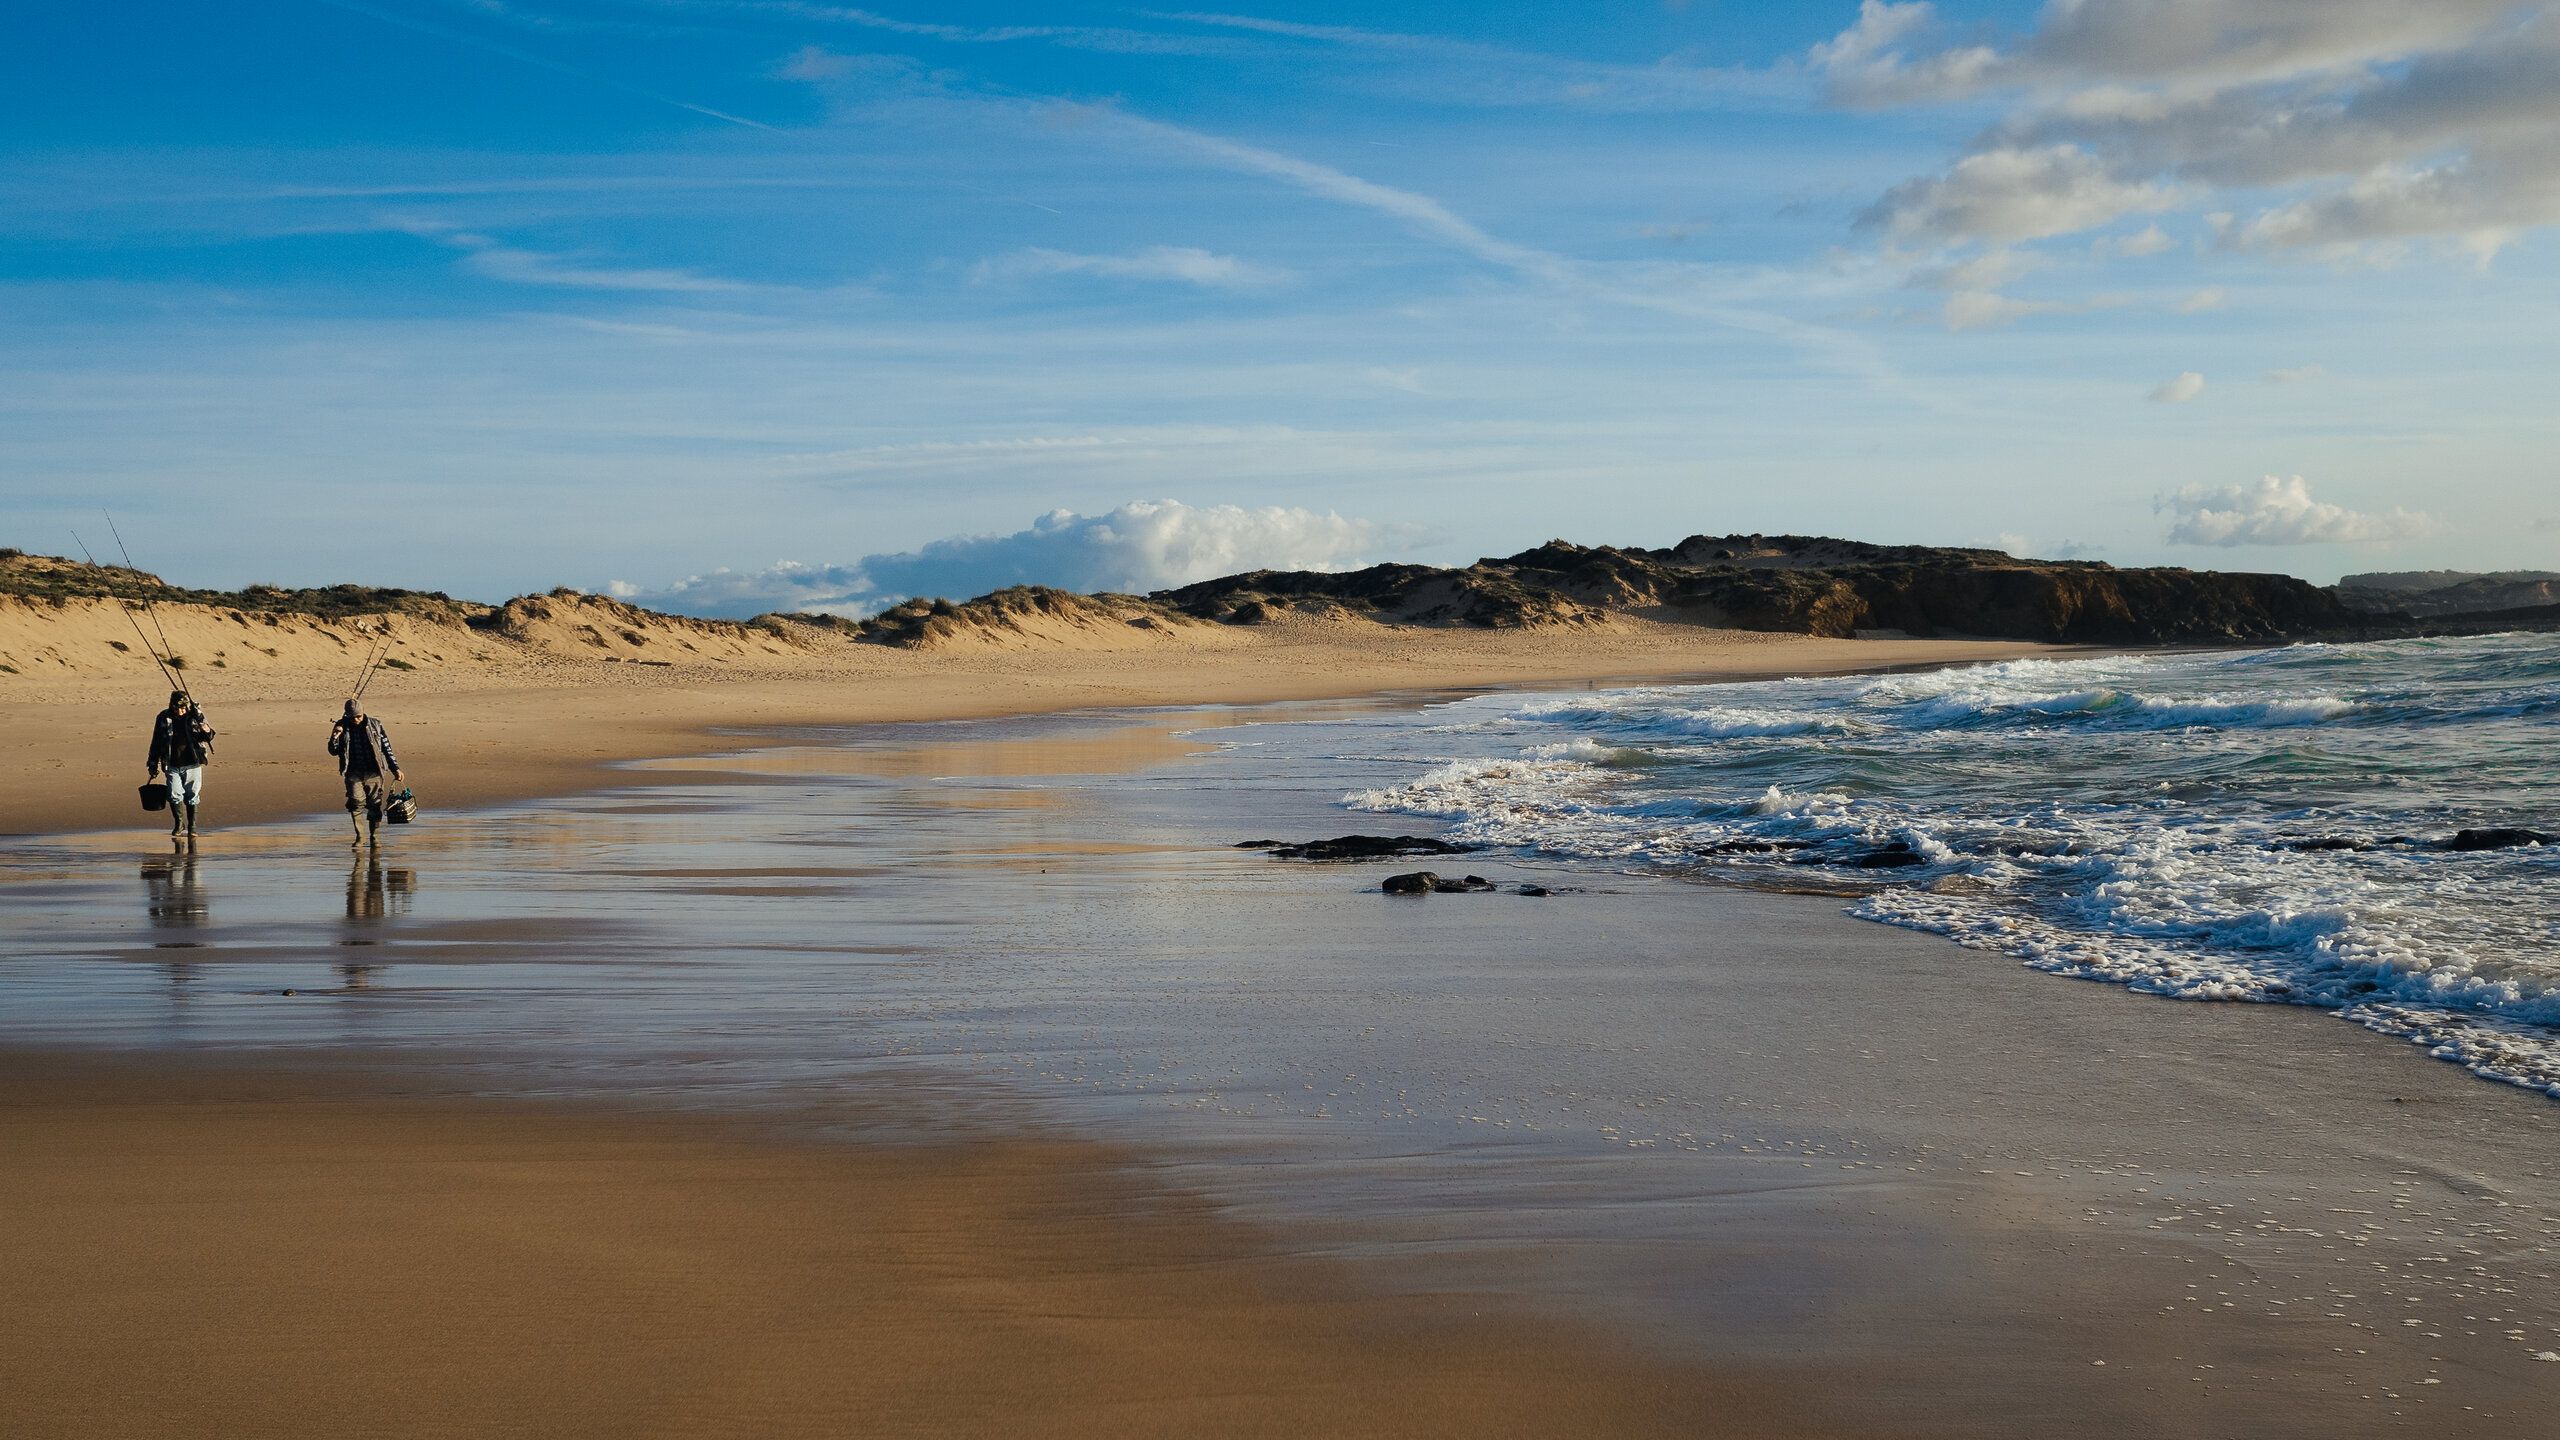 Ein Strand, an dem zwei Menschen stehen. Rechts die Wellen, im Hintergrund ein Hügelkette